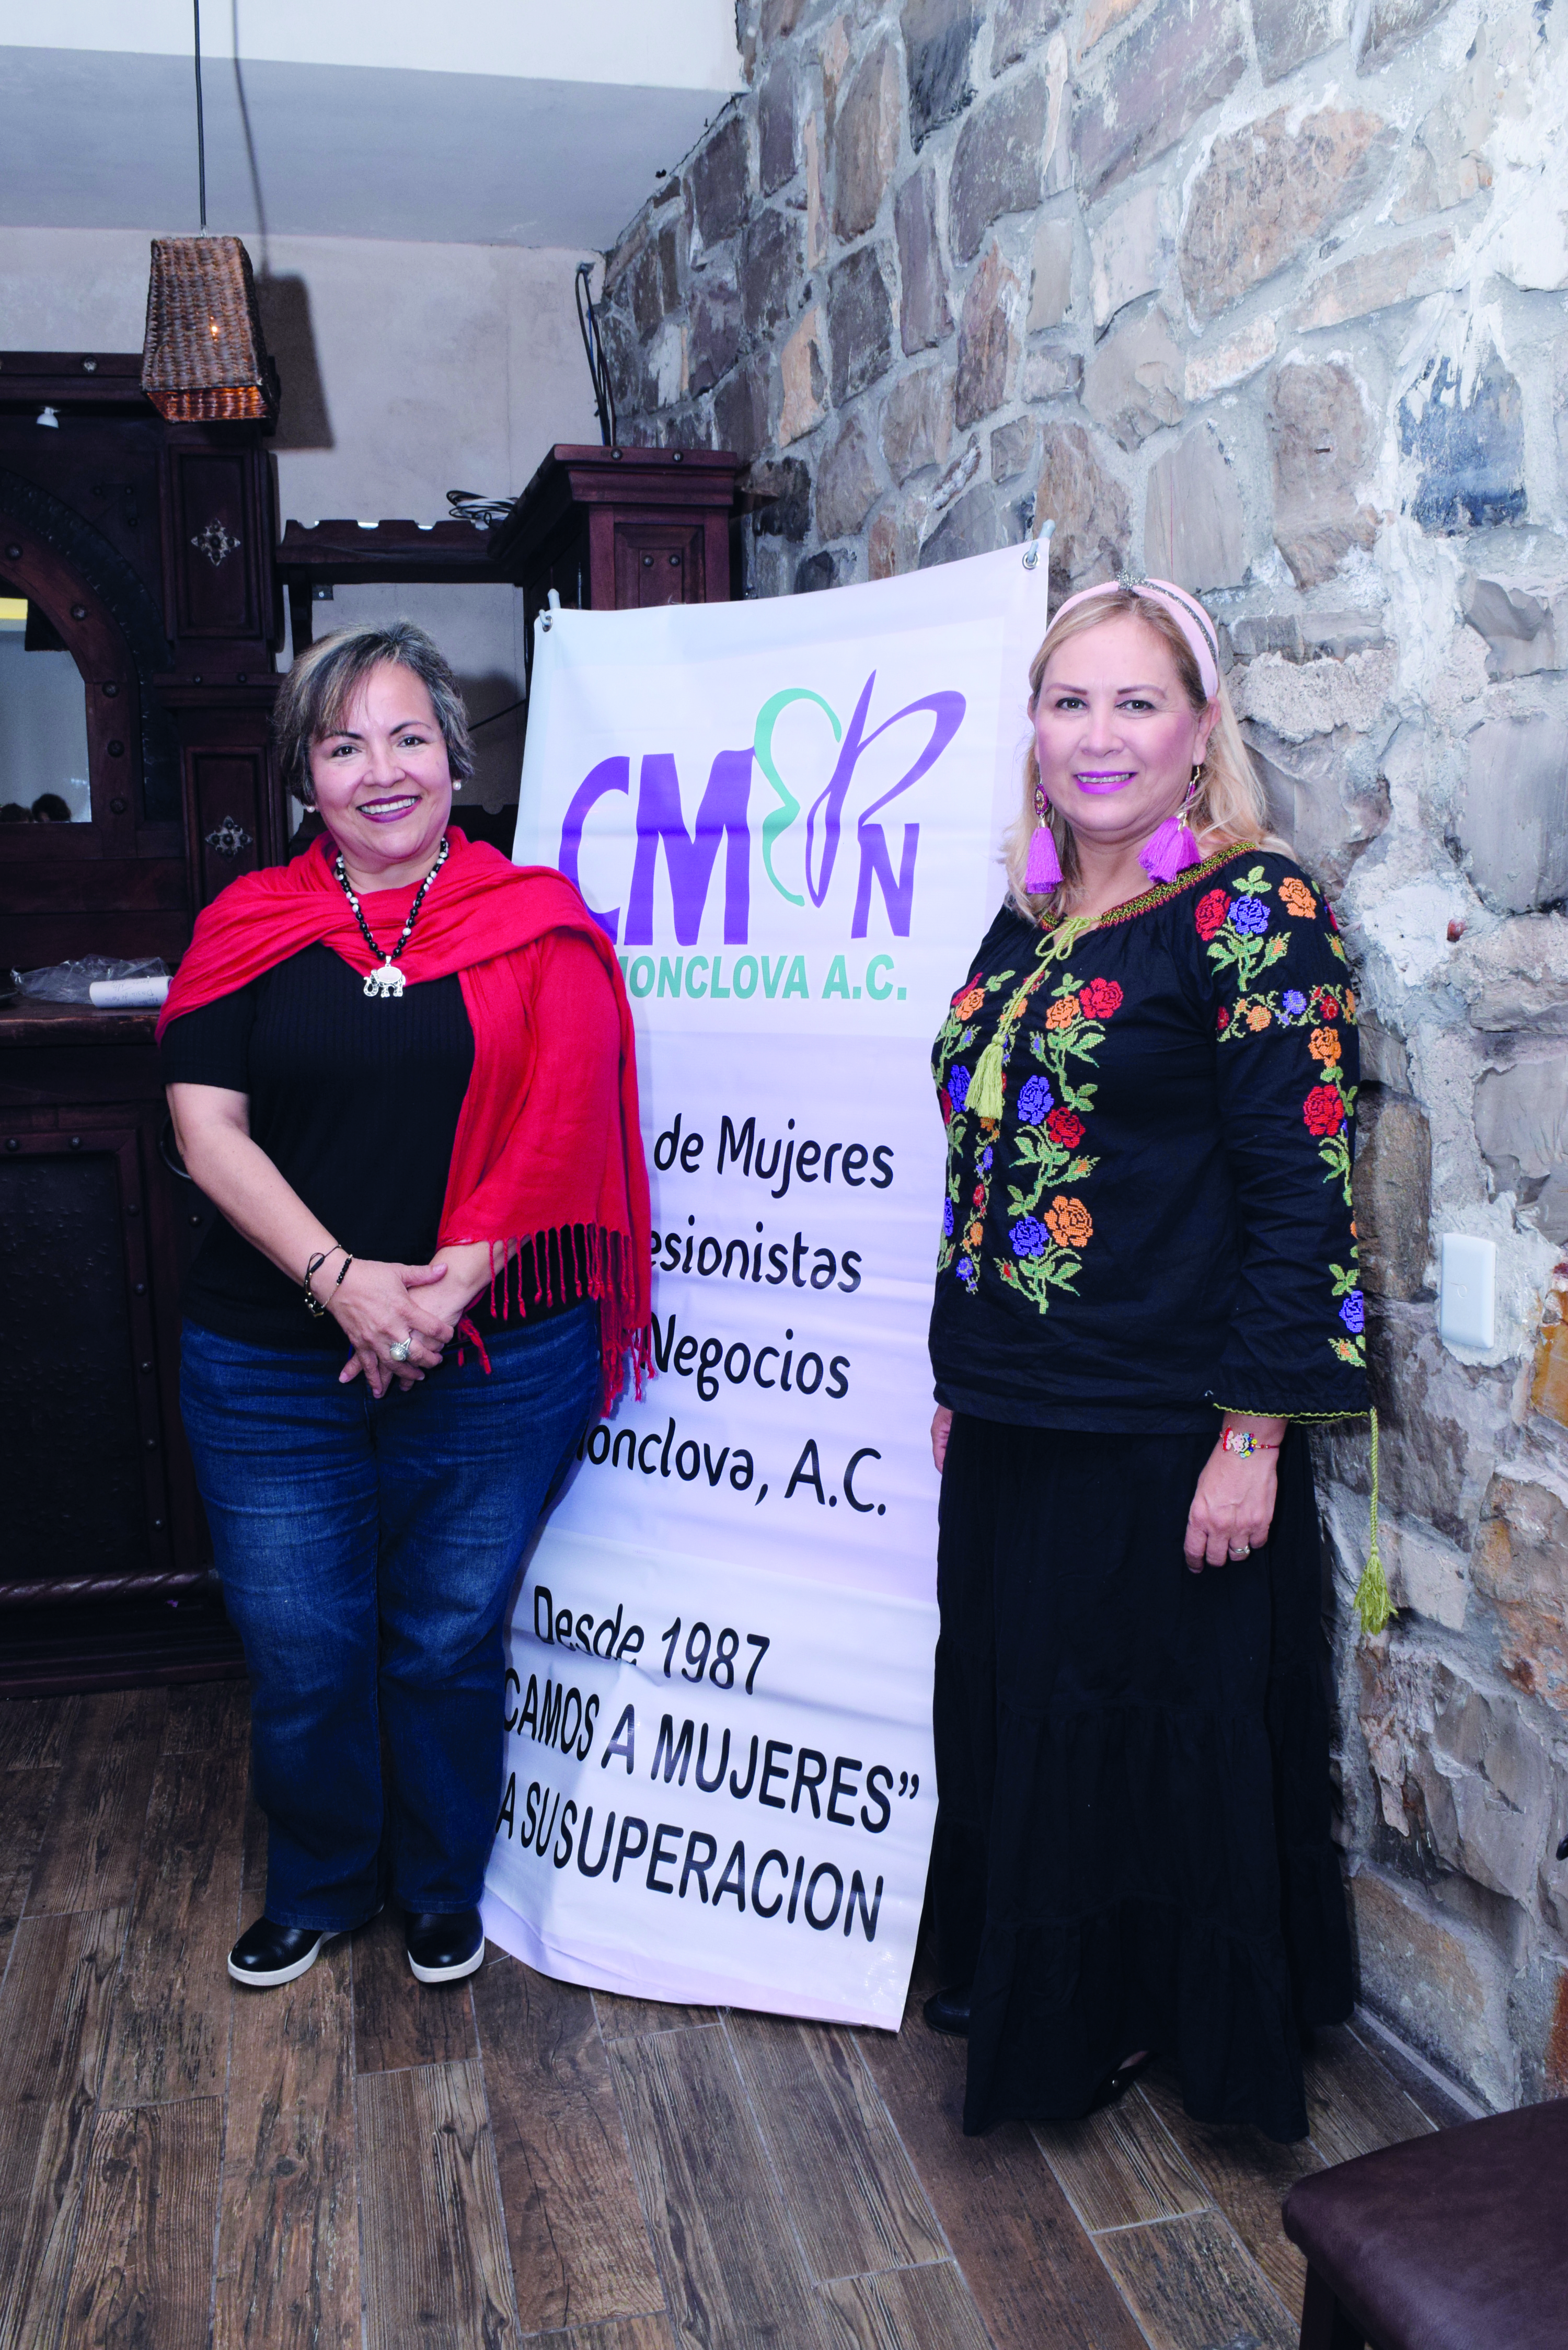 Club de Mujeres Profesionistas y de Negocios de Monclova  A.C